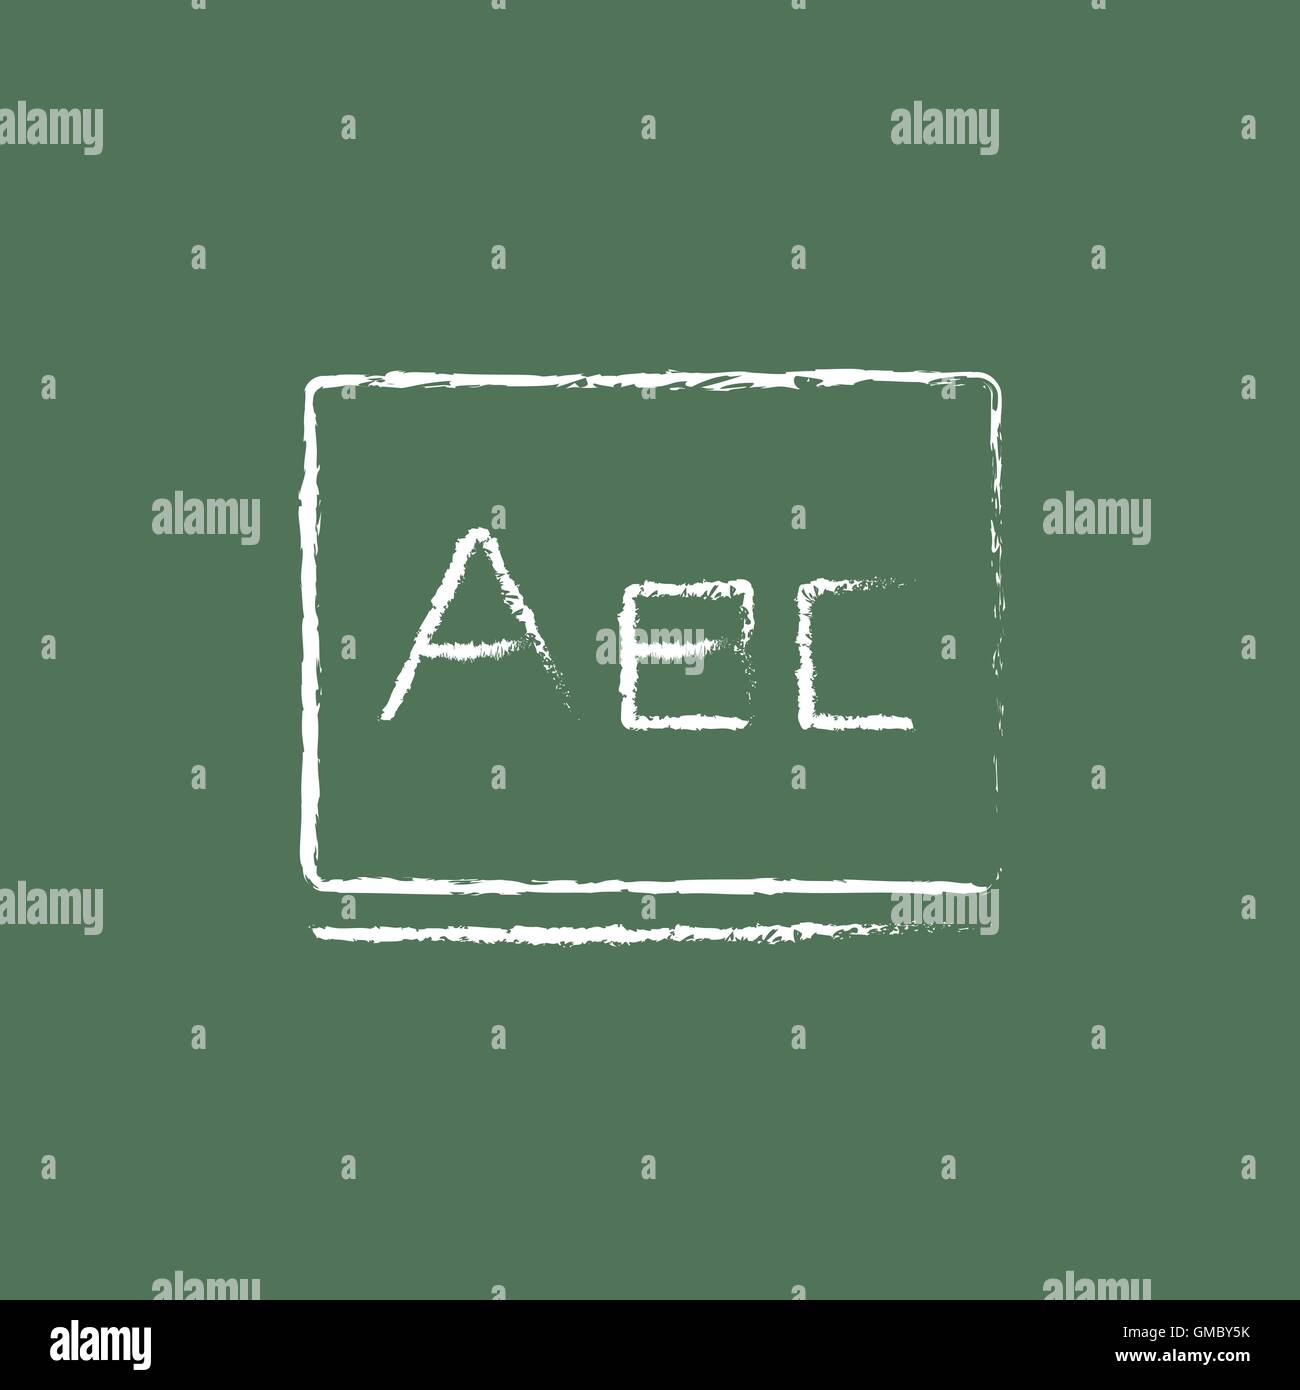 Buchstaben Abc anklicken Tafel mit Kreide gezeichnet. Stock Vektor